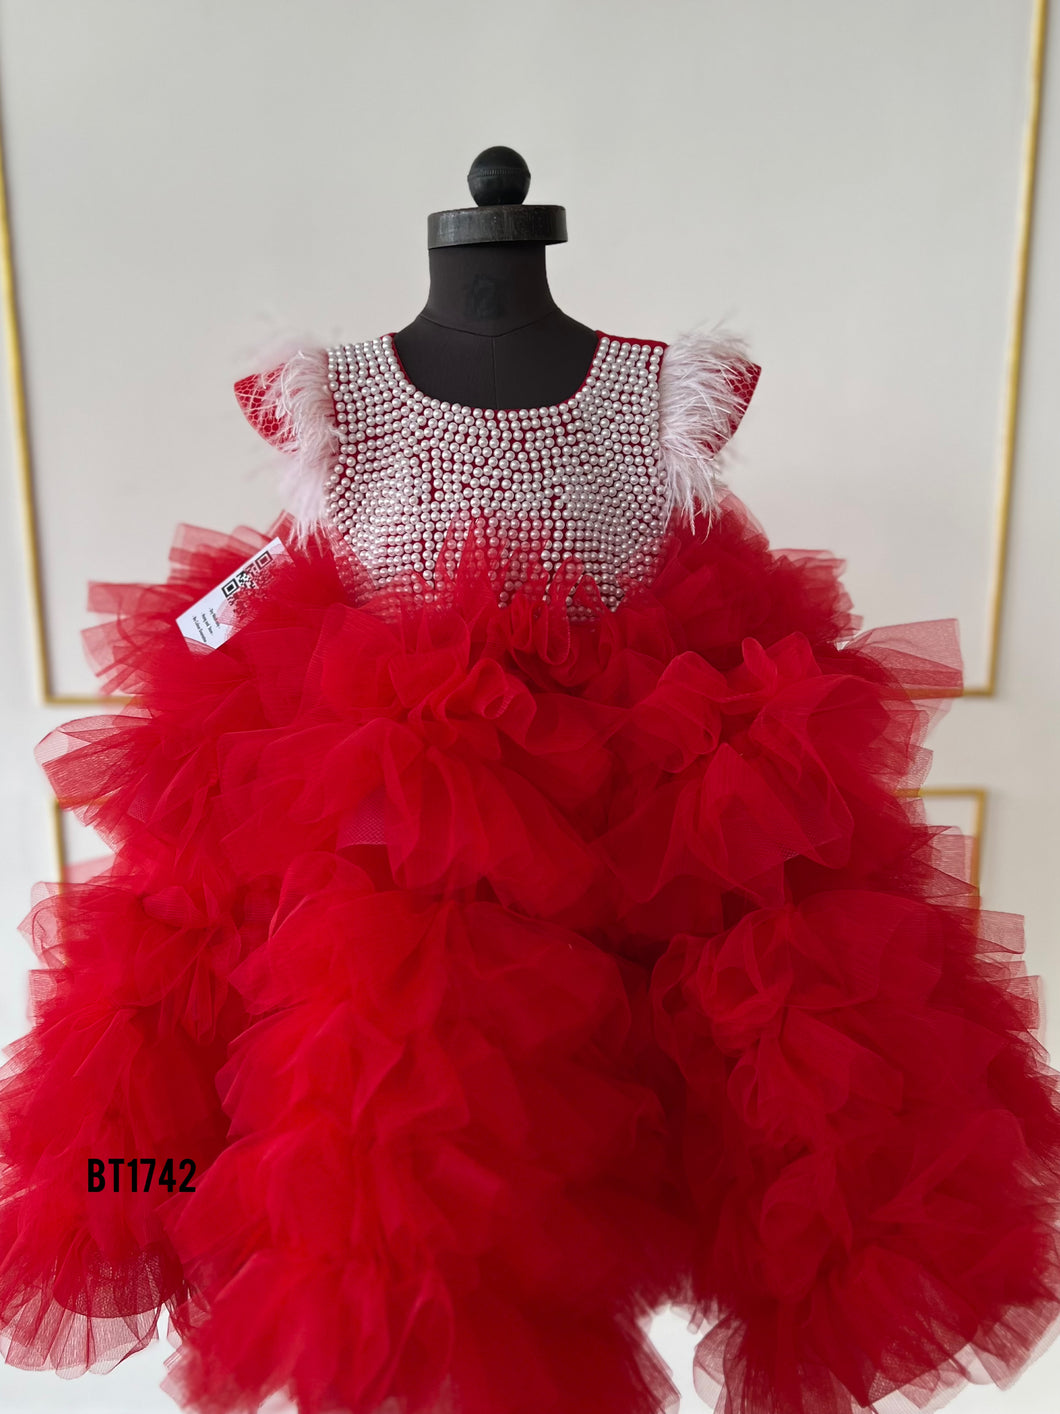 BT1742 Ruby Red Floral Fantasy Dress - A Joyful Splash of Color!